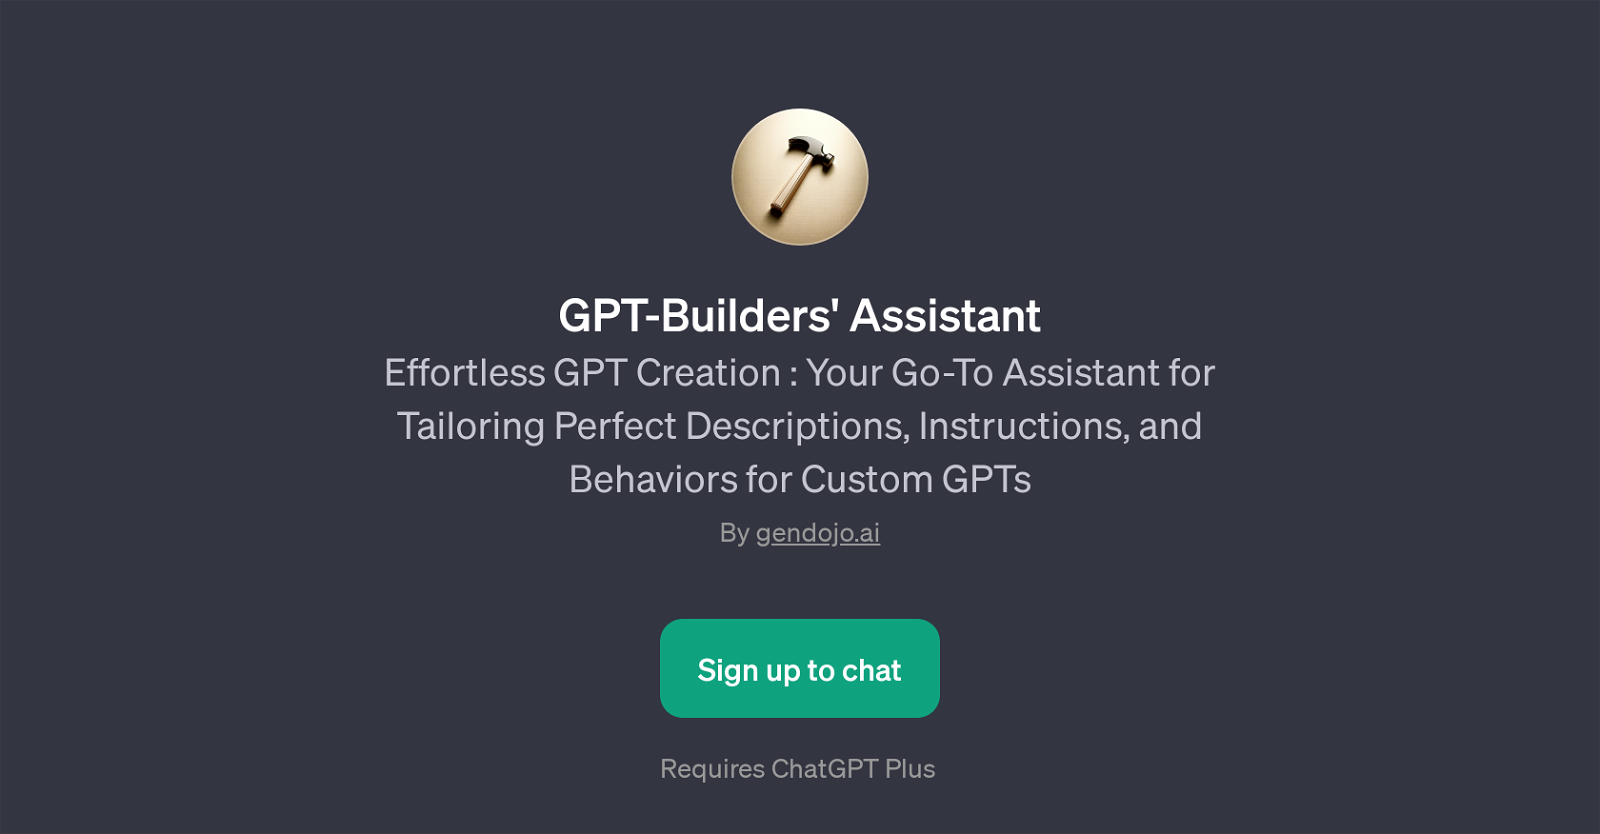 GPT-Builders' Assistant website